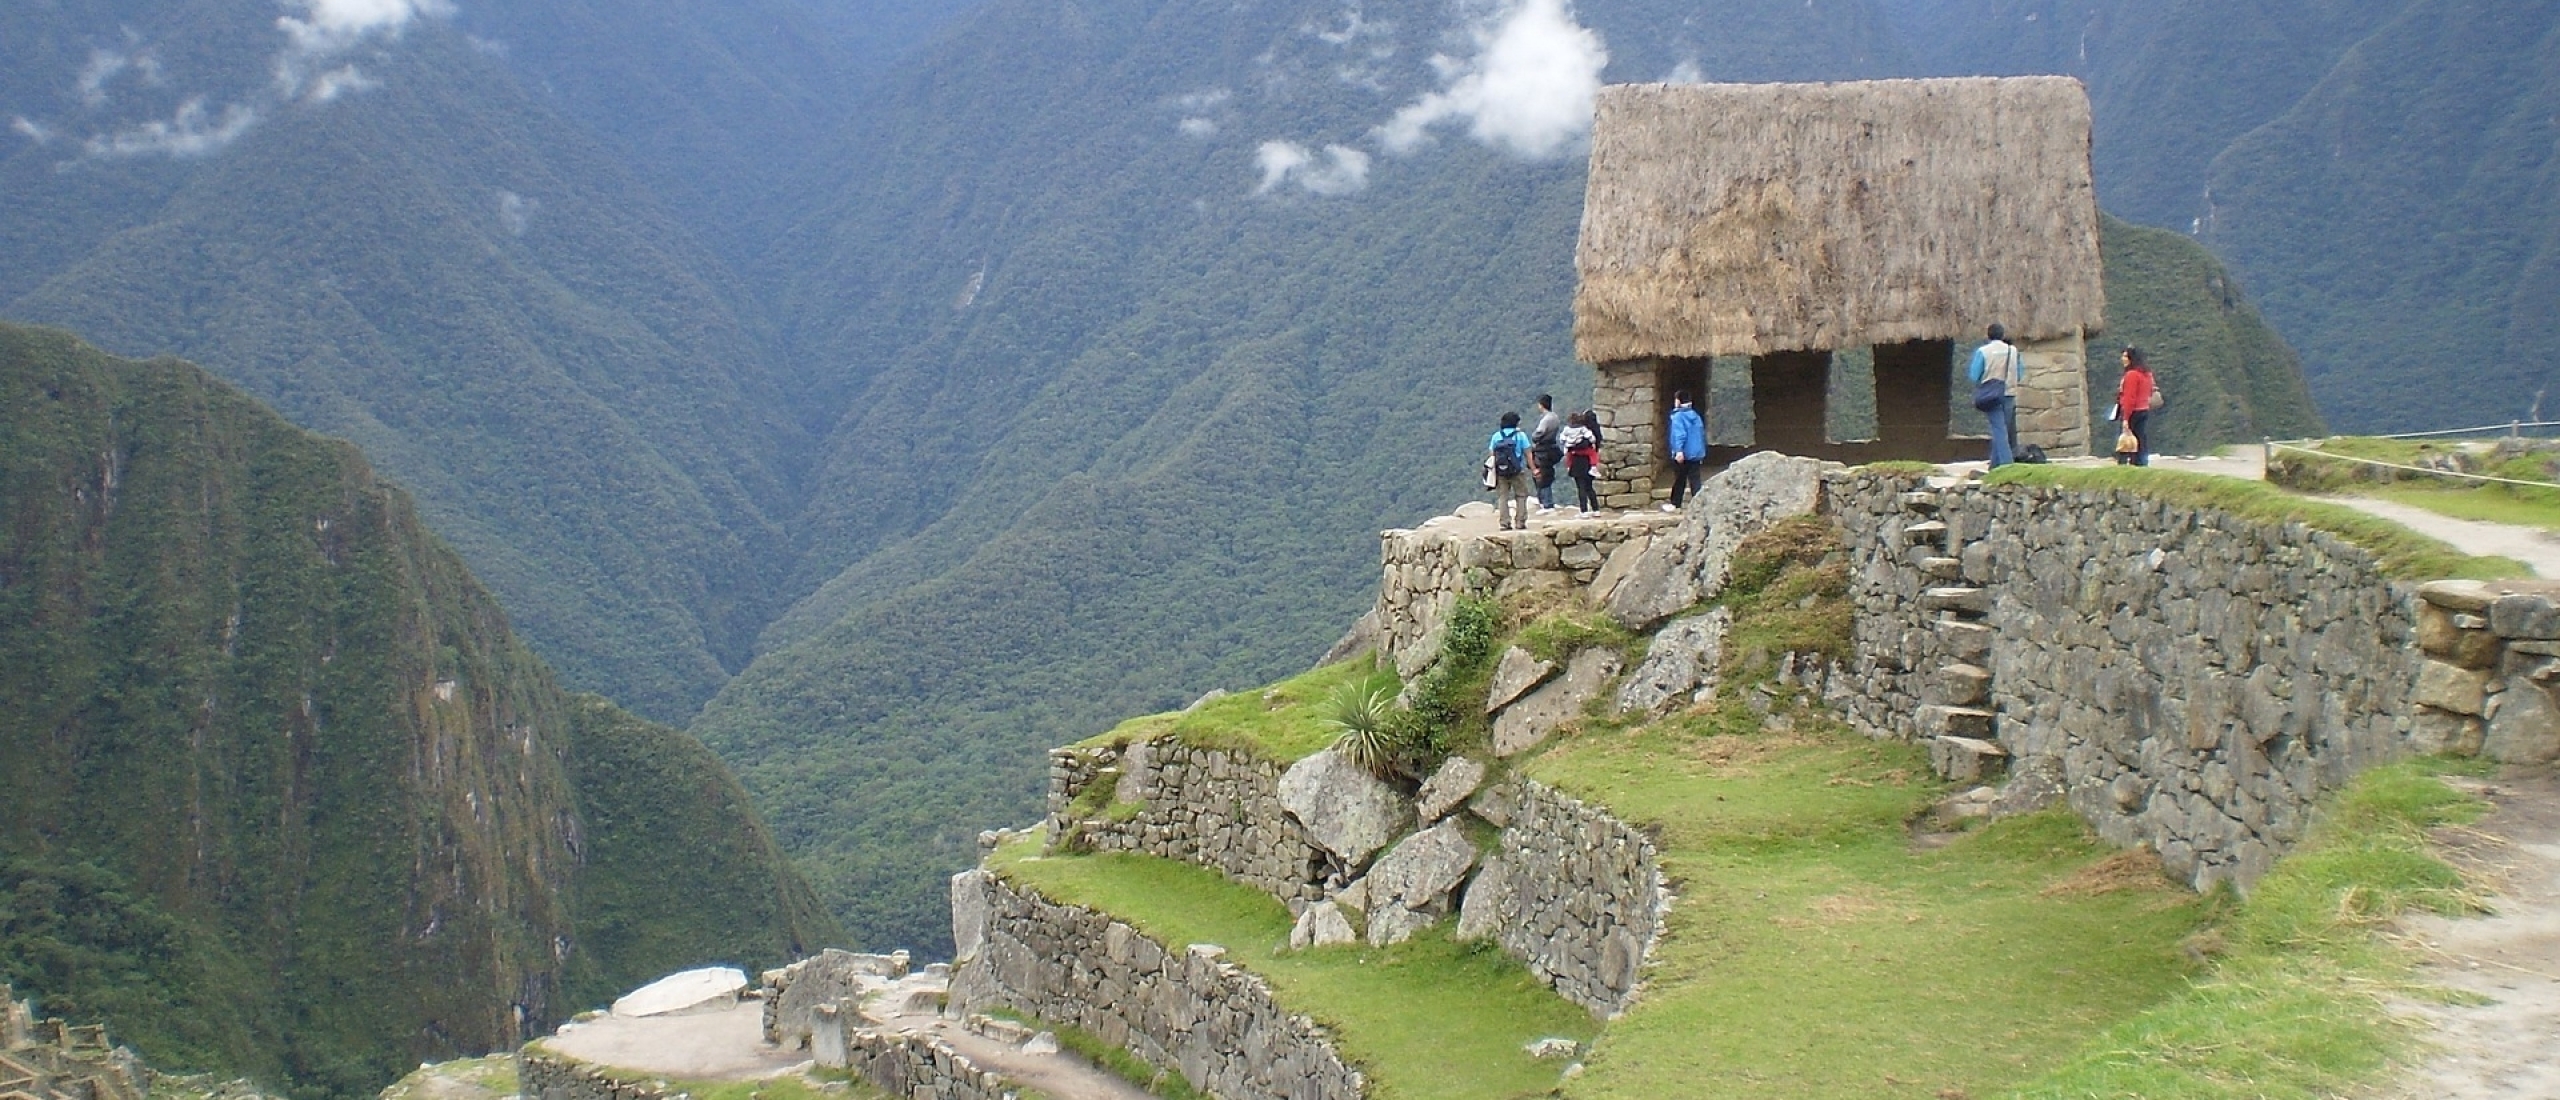 Routes voor het hiken in Peru